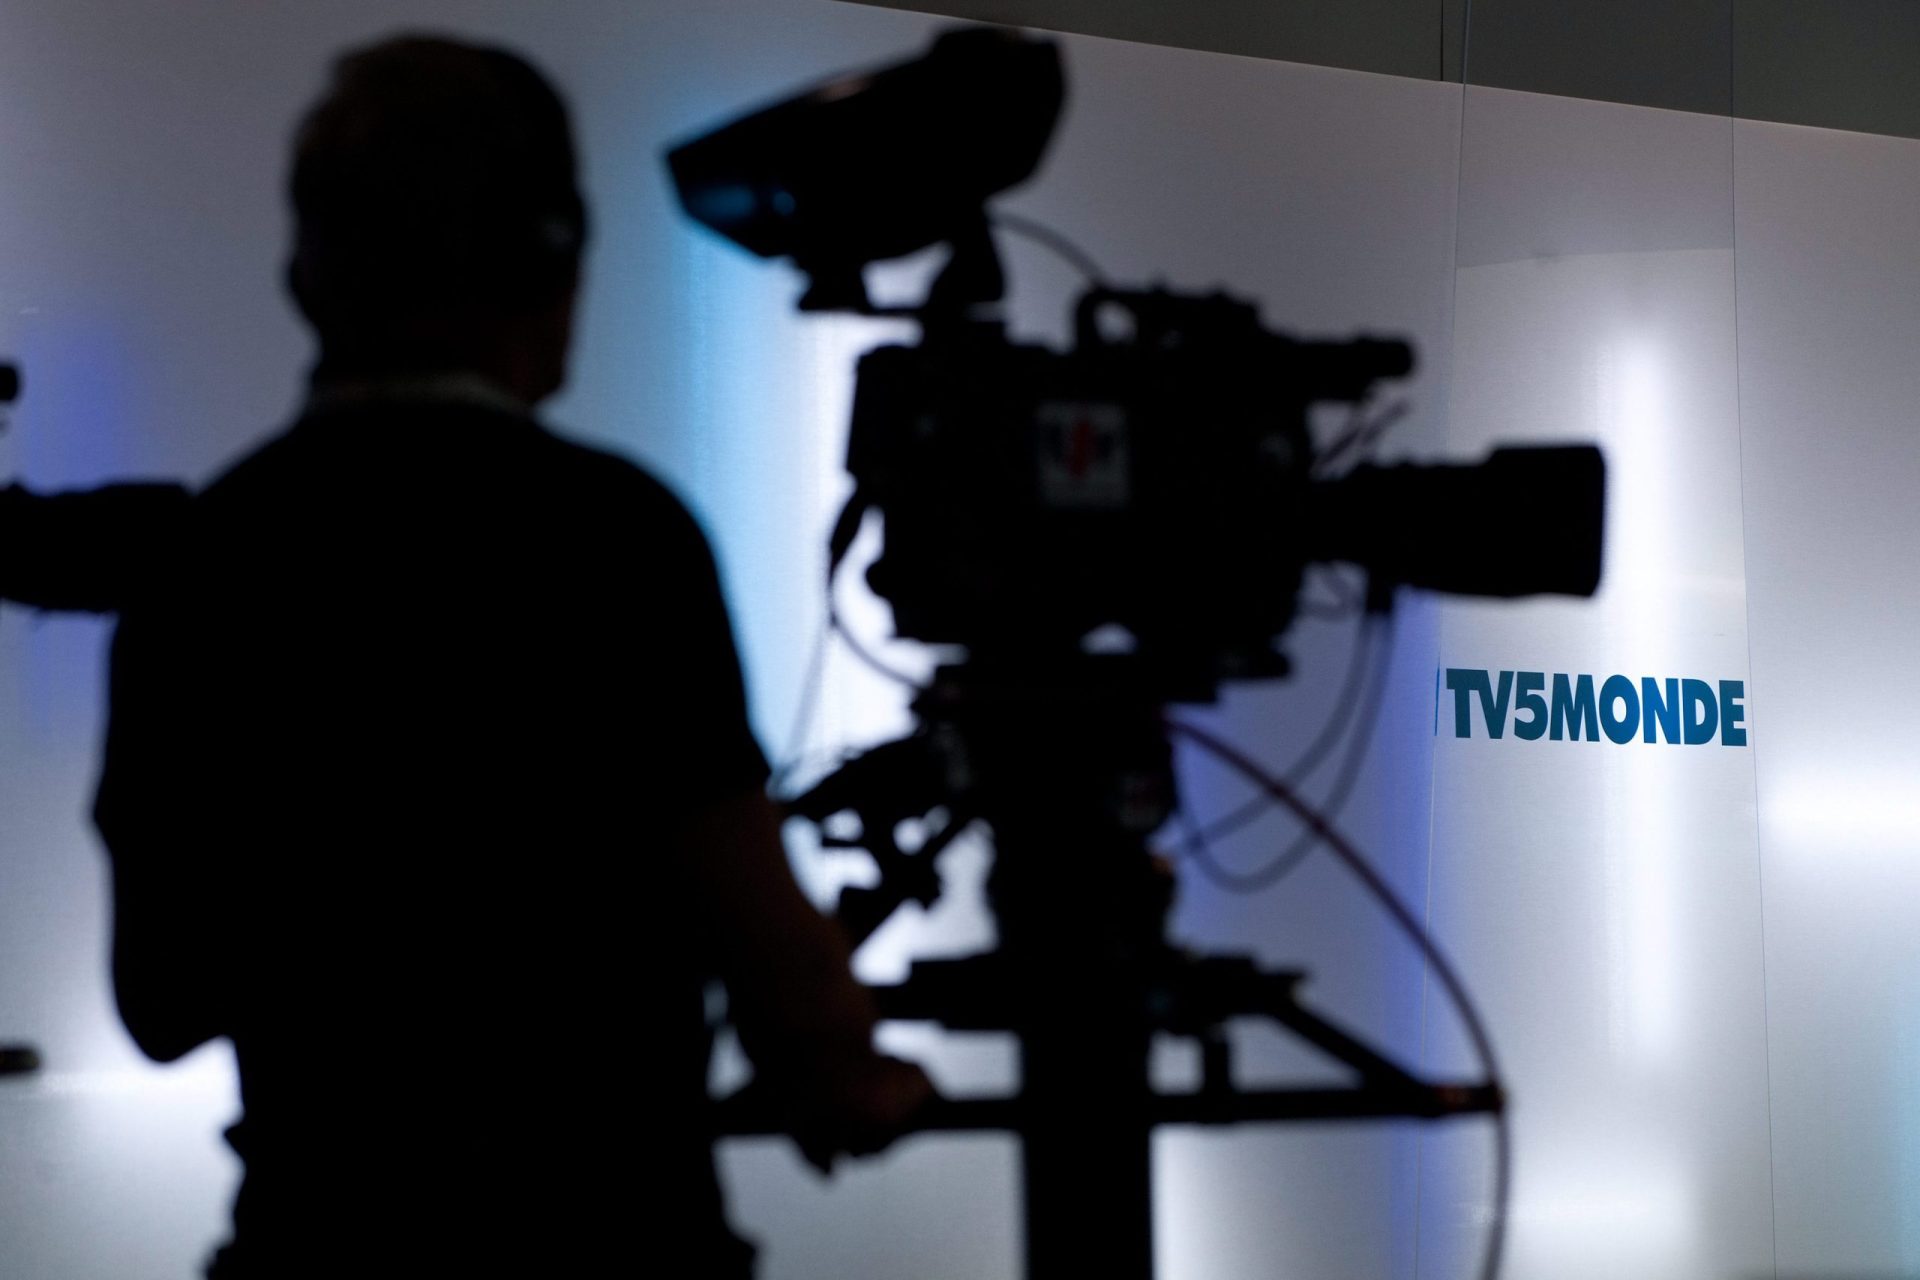 TV5Monde alvo de ataque informático e só consegue transmitir programas gravados